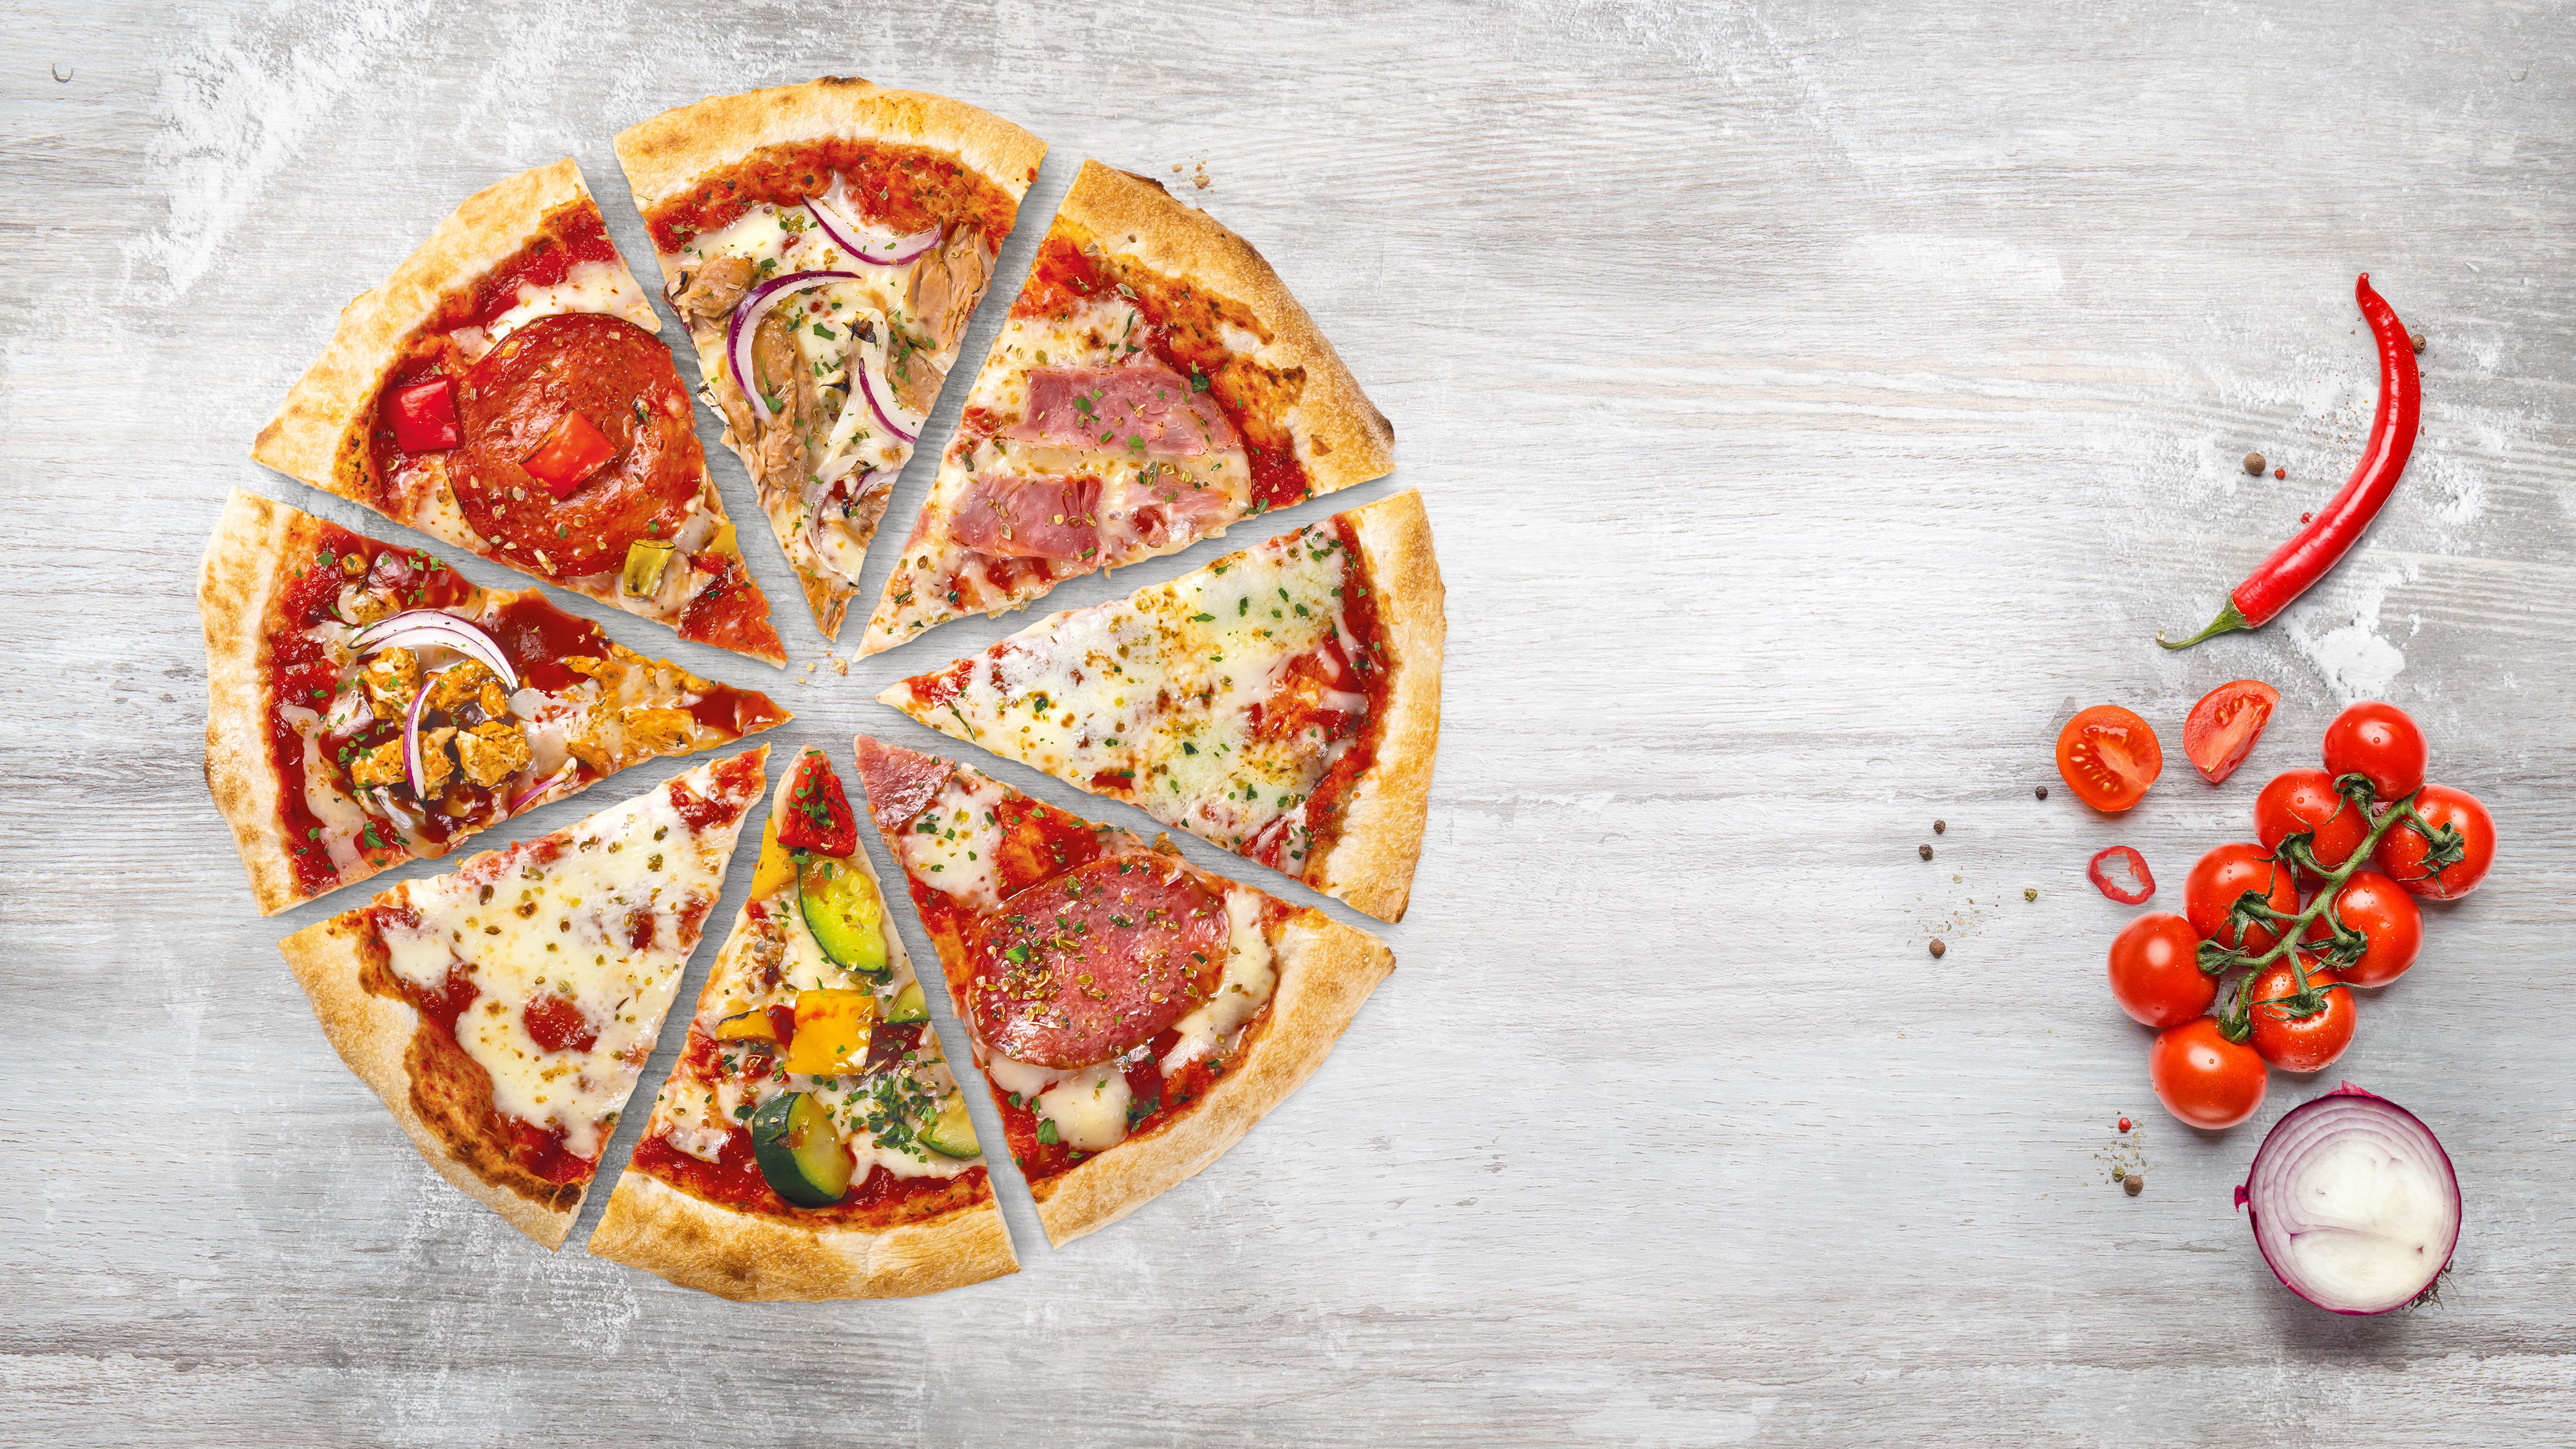 можете ли вы привнести баланс в соус я ищу пиццу мира с уважением фото 53